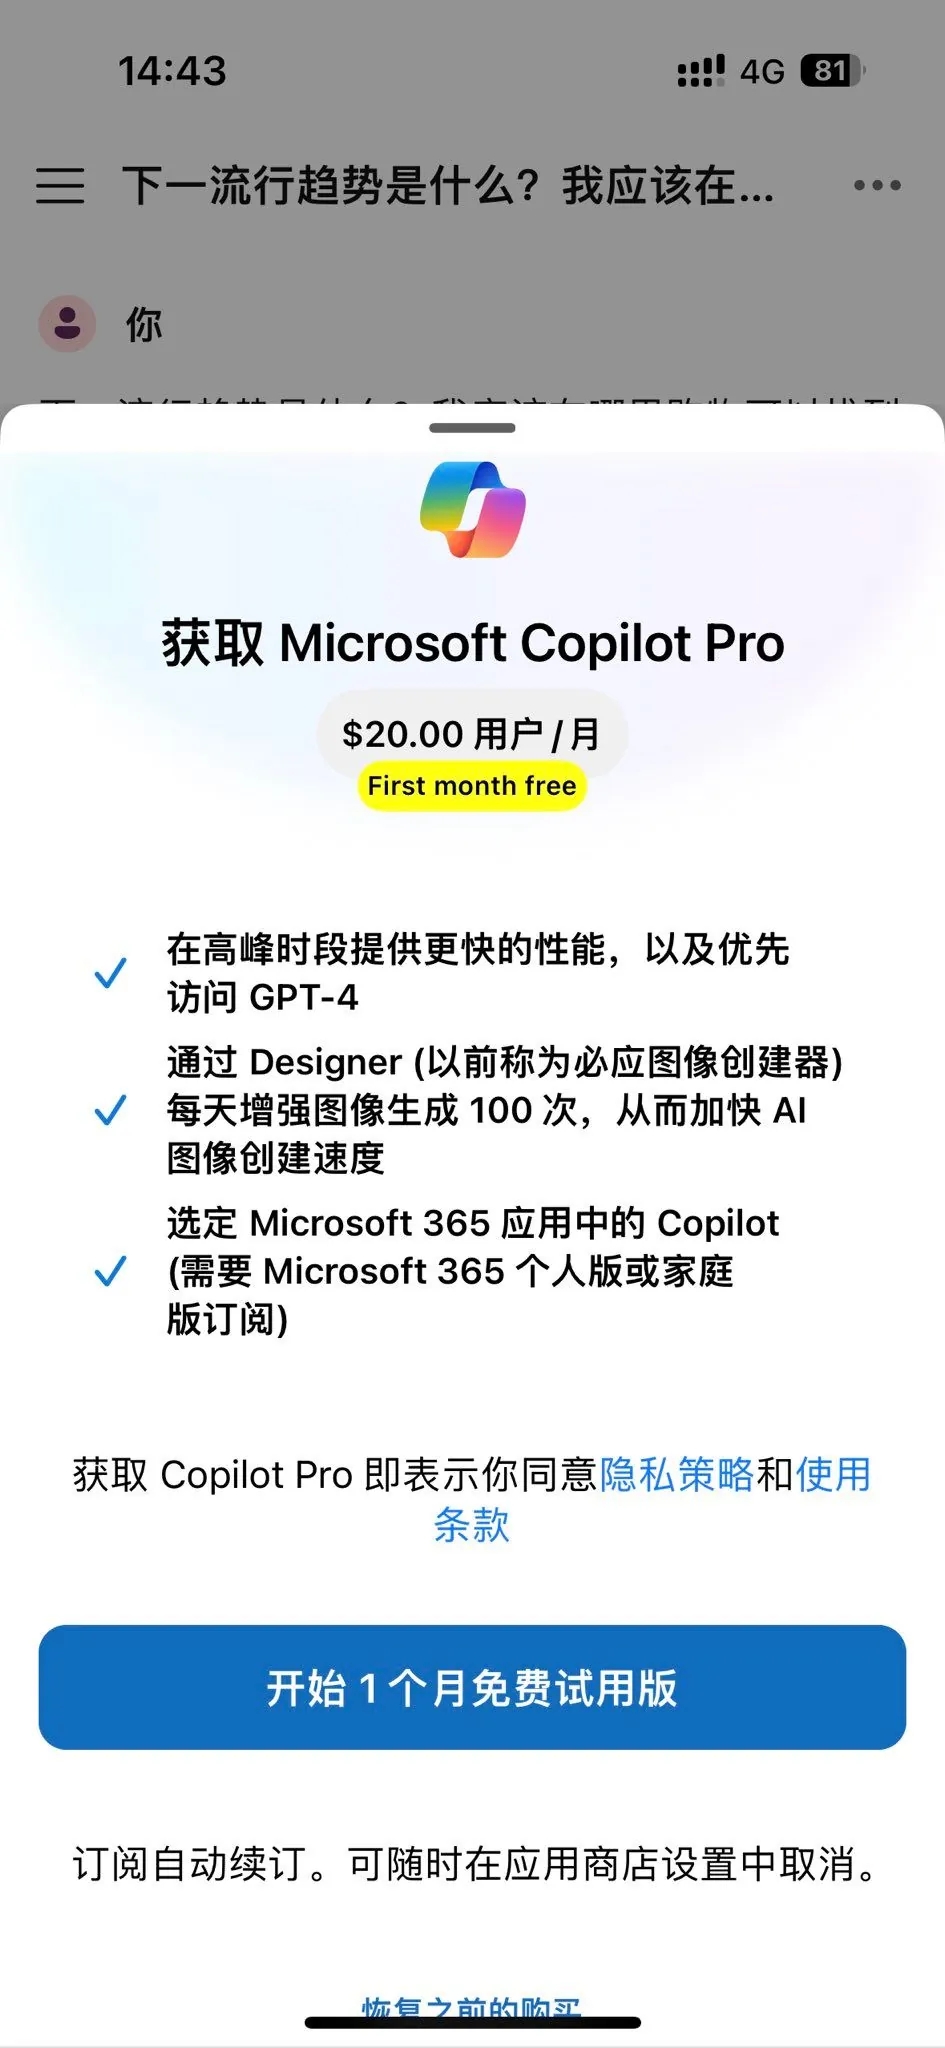 用户吐槽微软Copilot Pro有偏执倾向 会单方面结束对话